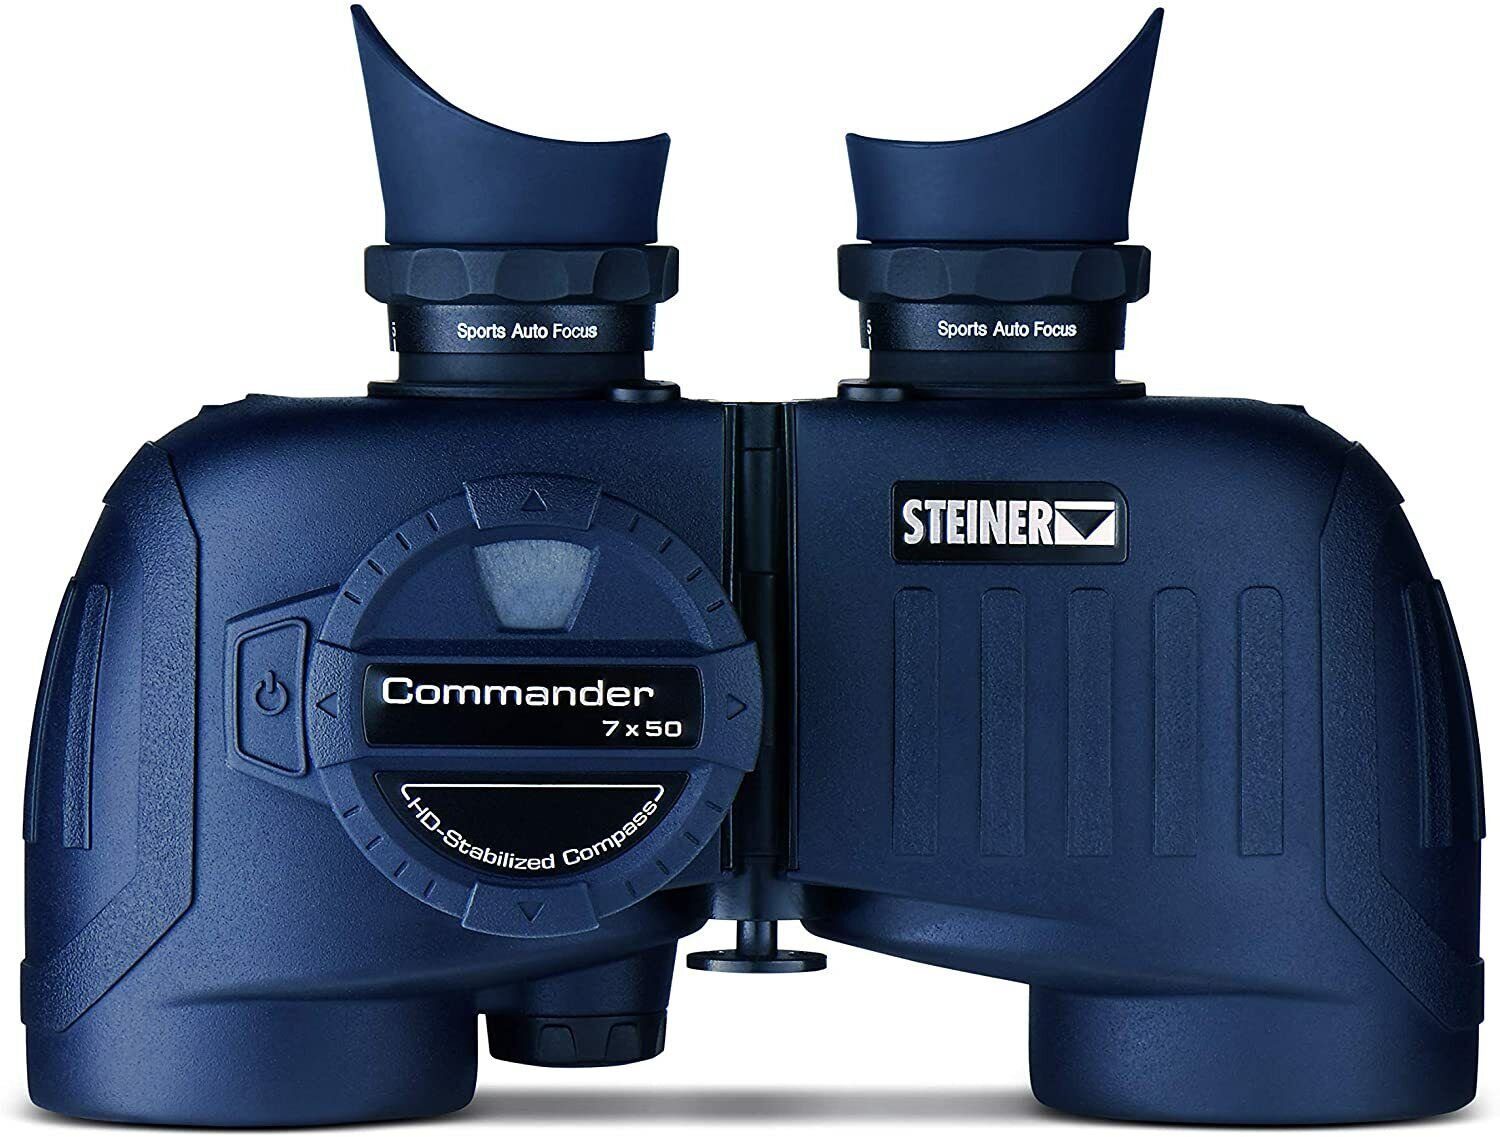 7x50c Steiner Commander Fernglas